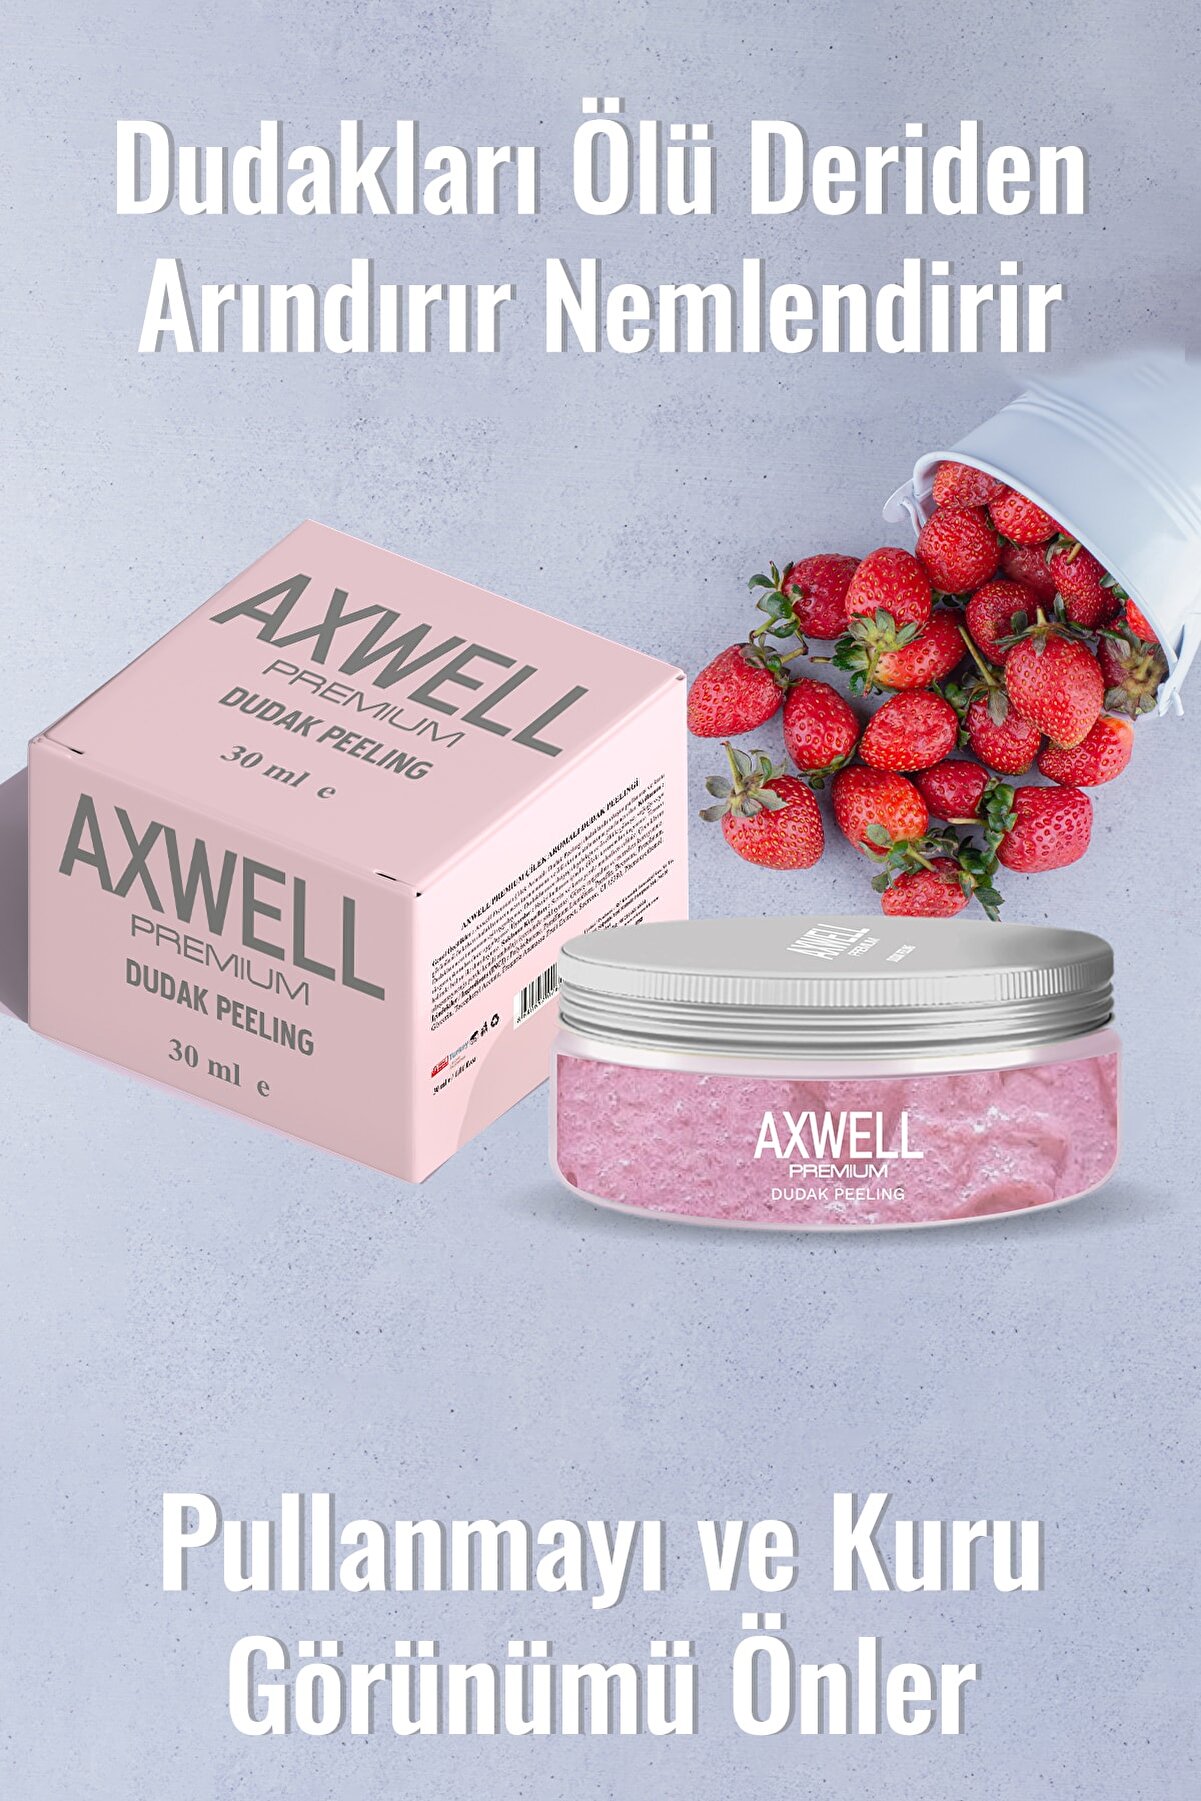 AXWELL Premium Çilek Aromalı Dudak Bakım Peelingi 30ml